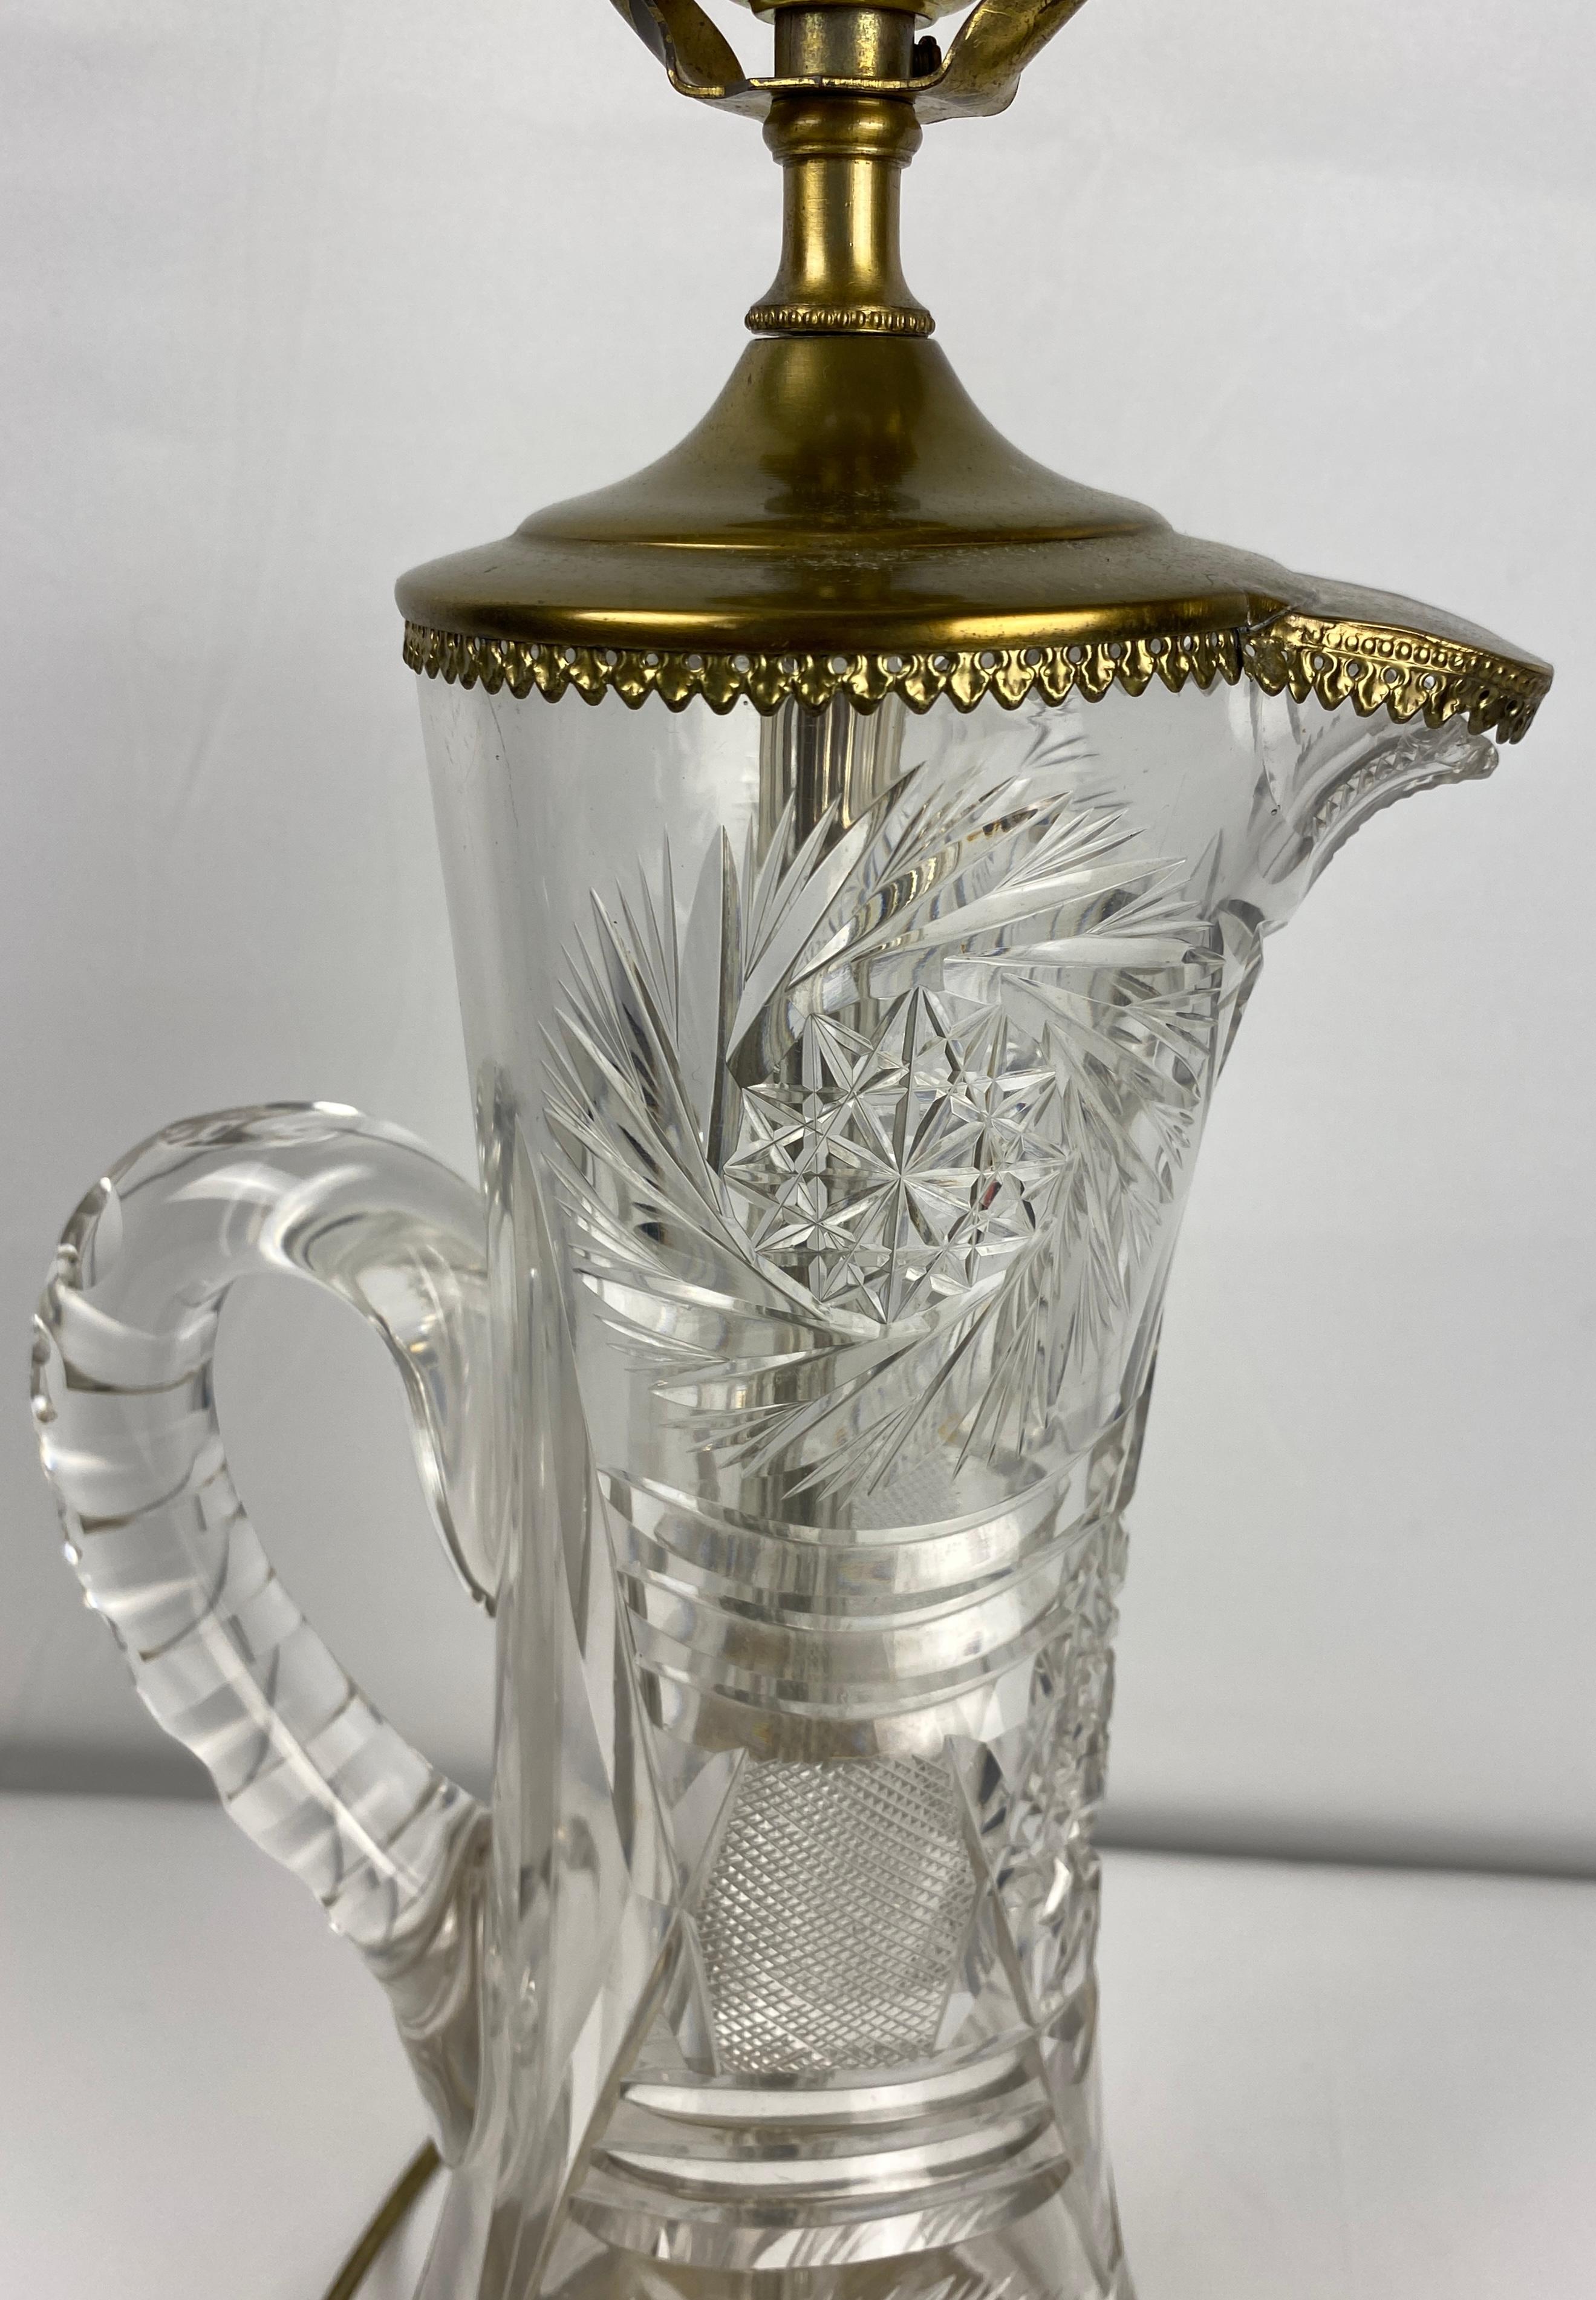 Lampe de table en cristal de belle qualité, attribuée à Waterford Crystal. 

Cette lampe de table en cristal a été modifiée à partir d'un vase en forme de pichet et reprend les caractéristiques du motif moderne de Modern-Decor, décoré de découpes